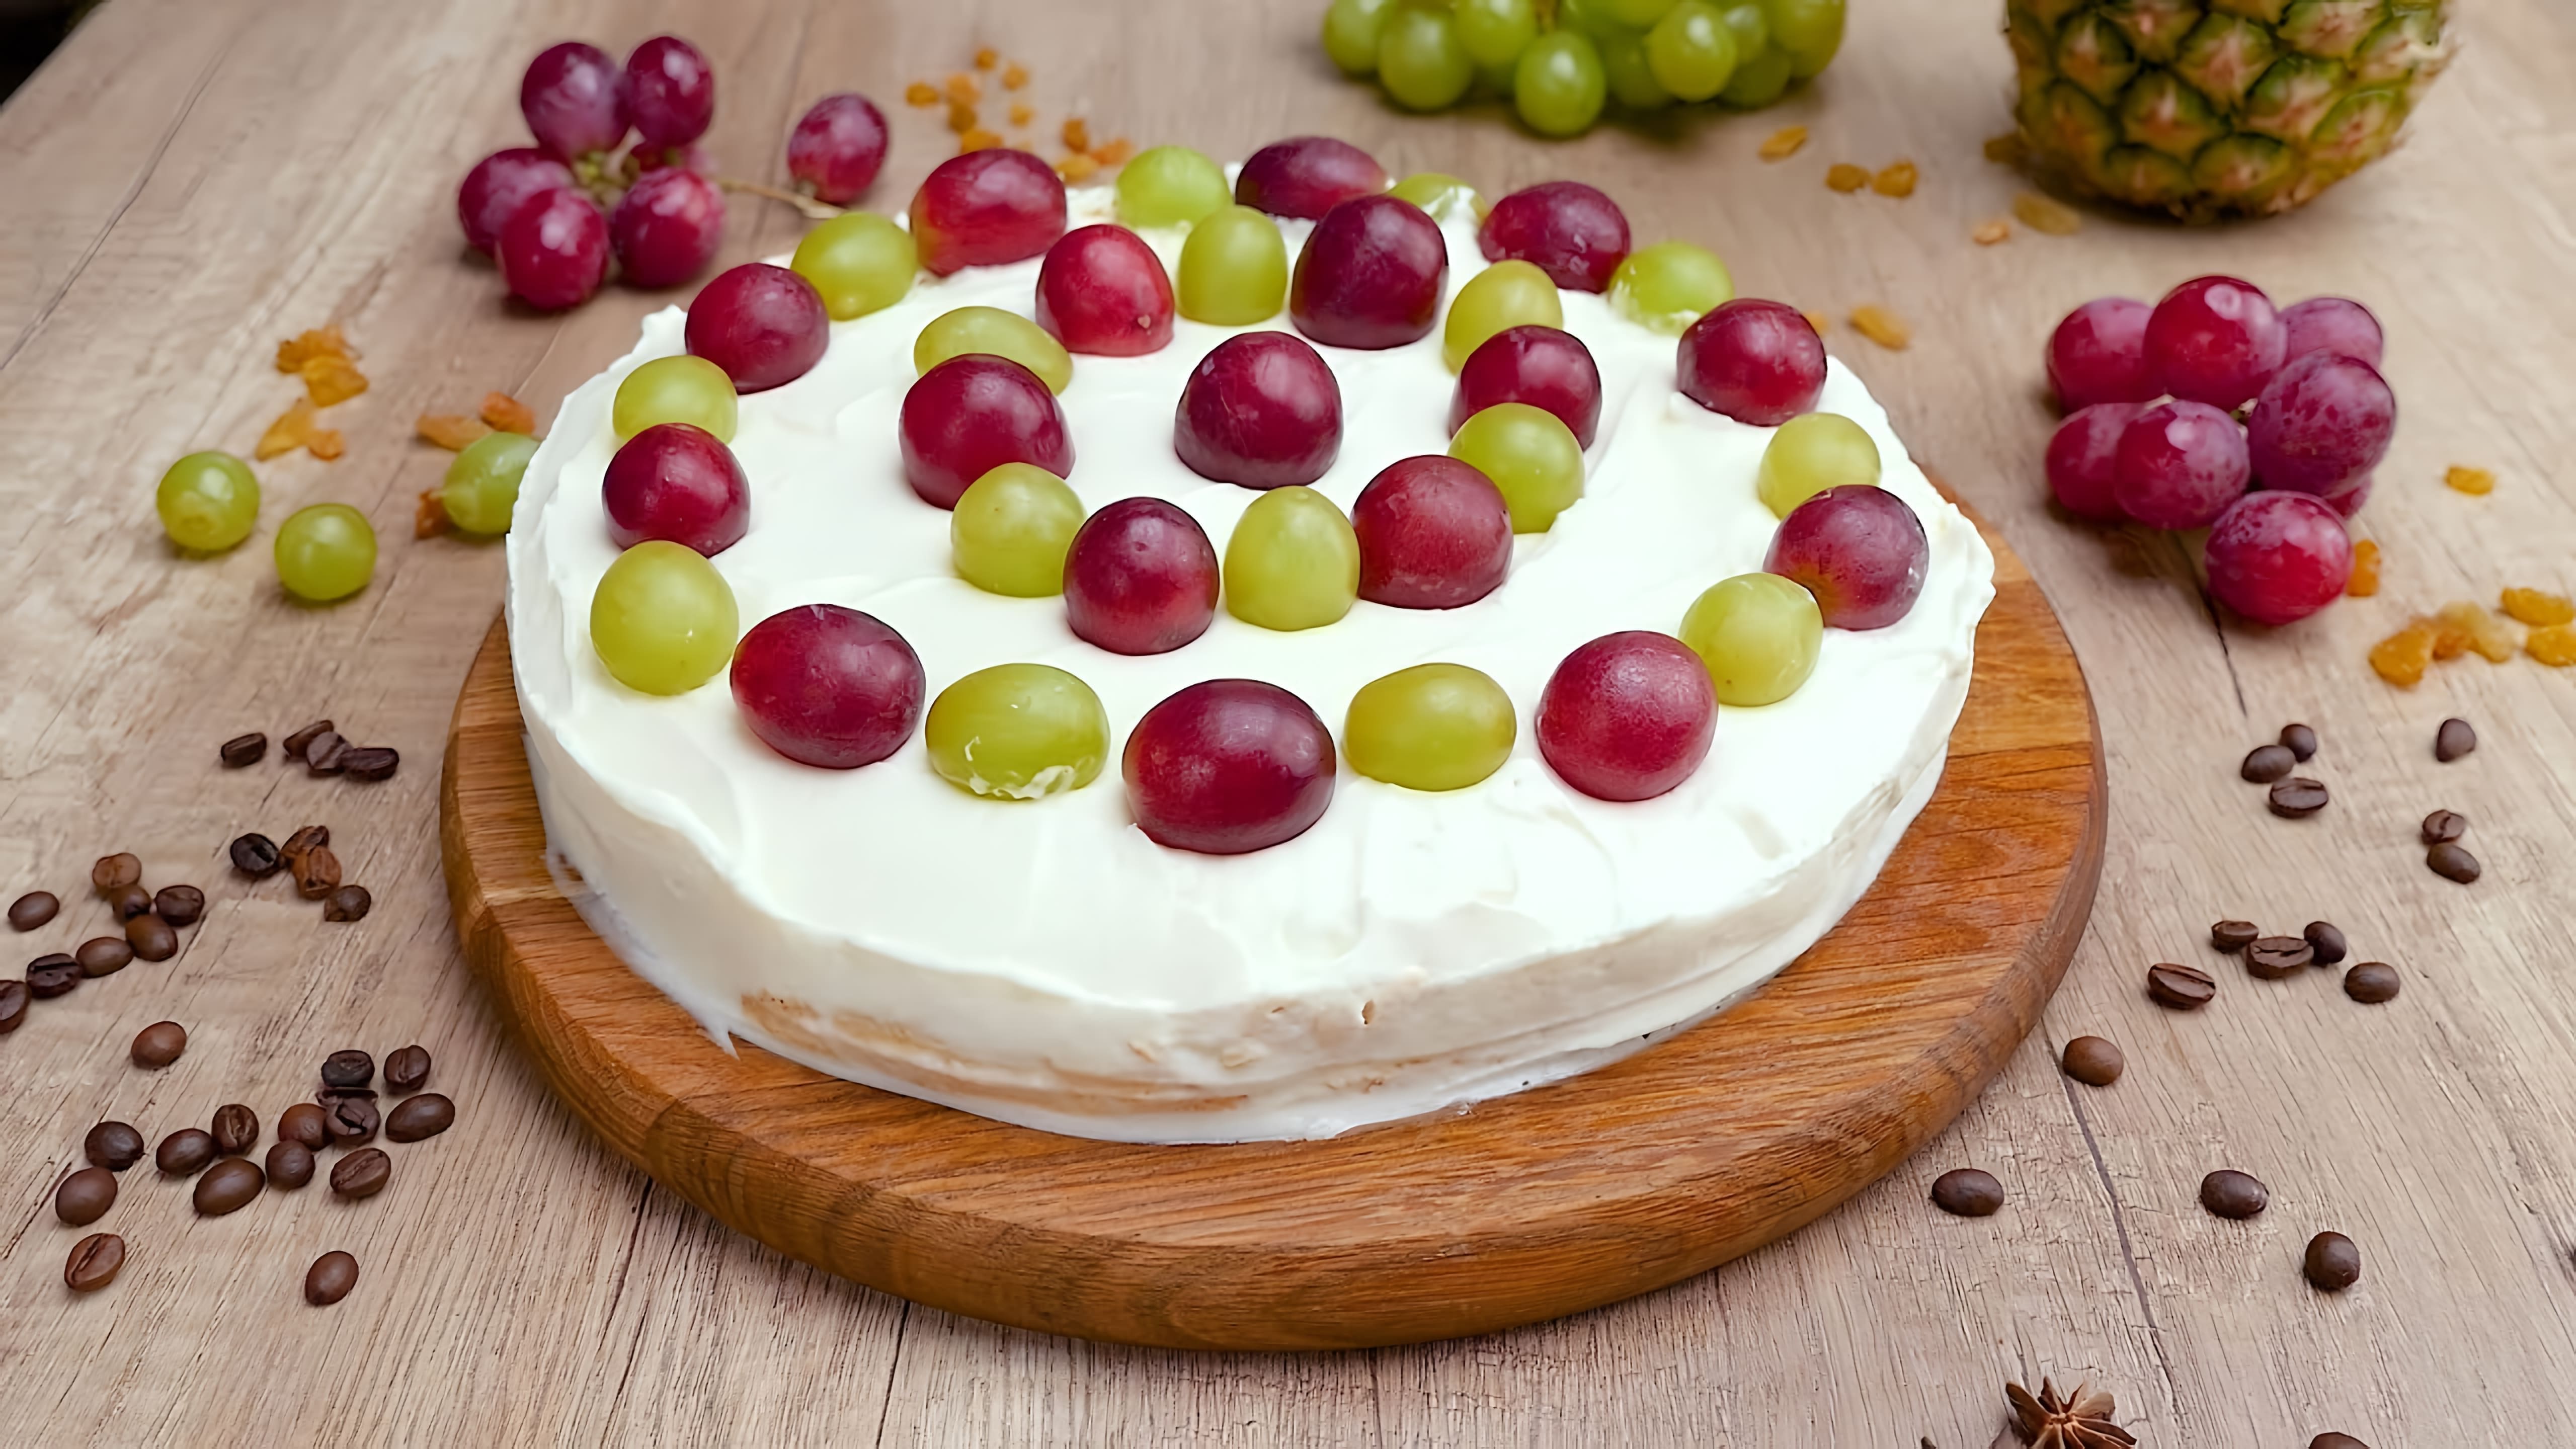 Торт "Павлова" - это десерт, который готовится из безе, взбитых сливок и свежих фруктов